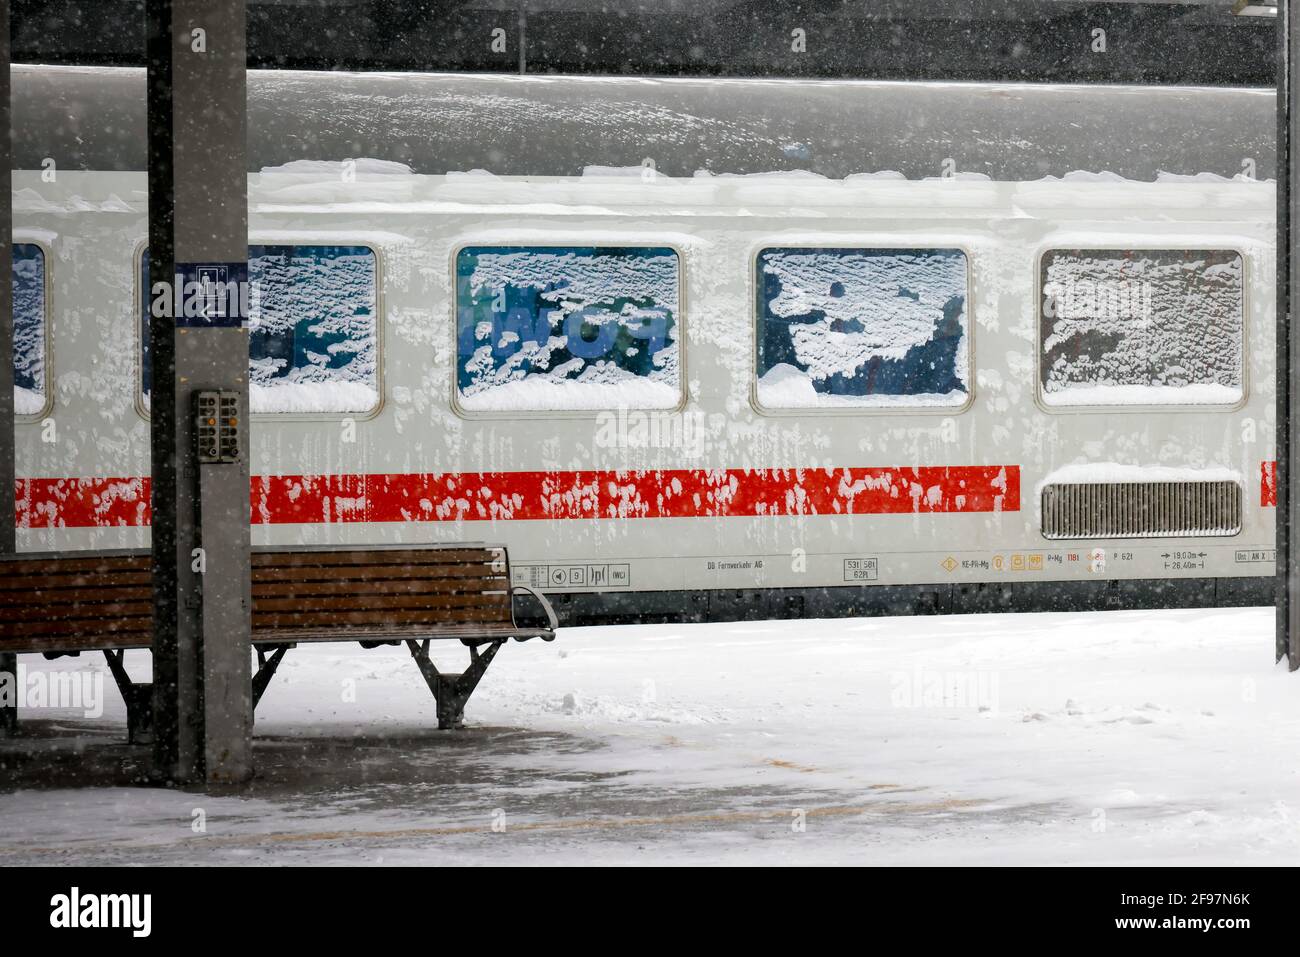 Essen, Renania del Norte-Westfalia, Alemania - Inicio del invierno En la zona de Ruhr, estación de tren de Essen, muchos trenes se retrasan o cancelan debido al hielo y la nieve. Foto de stock